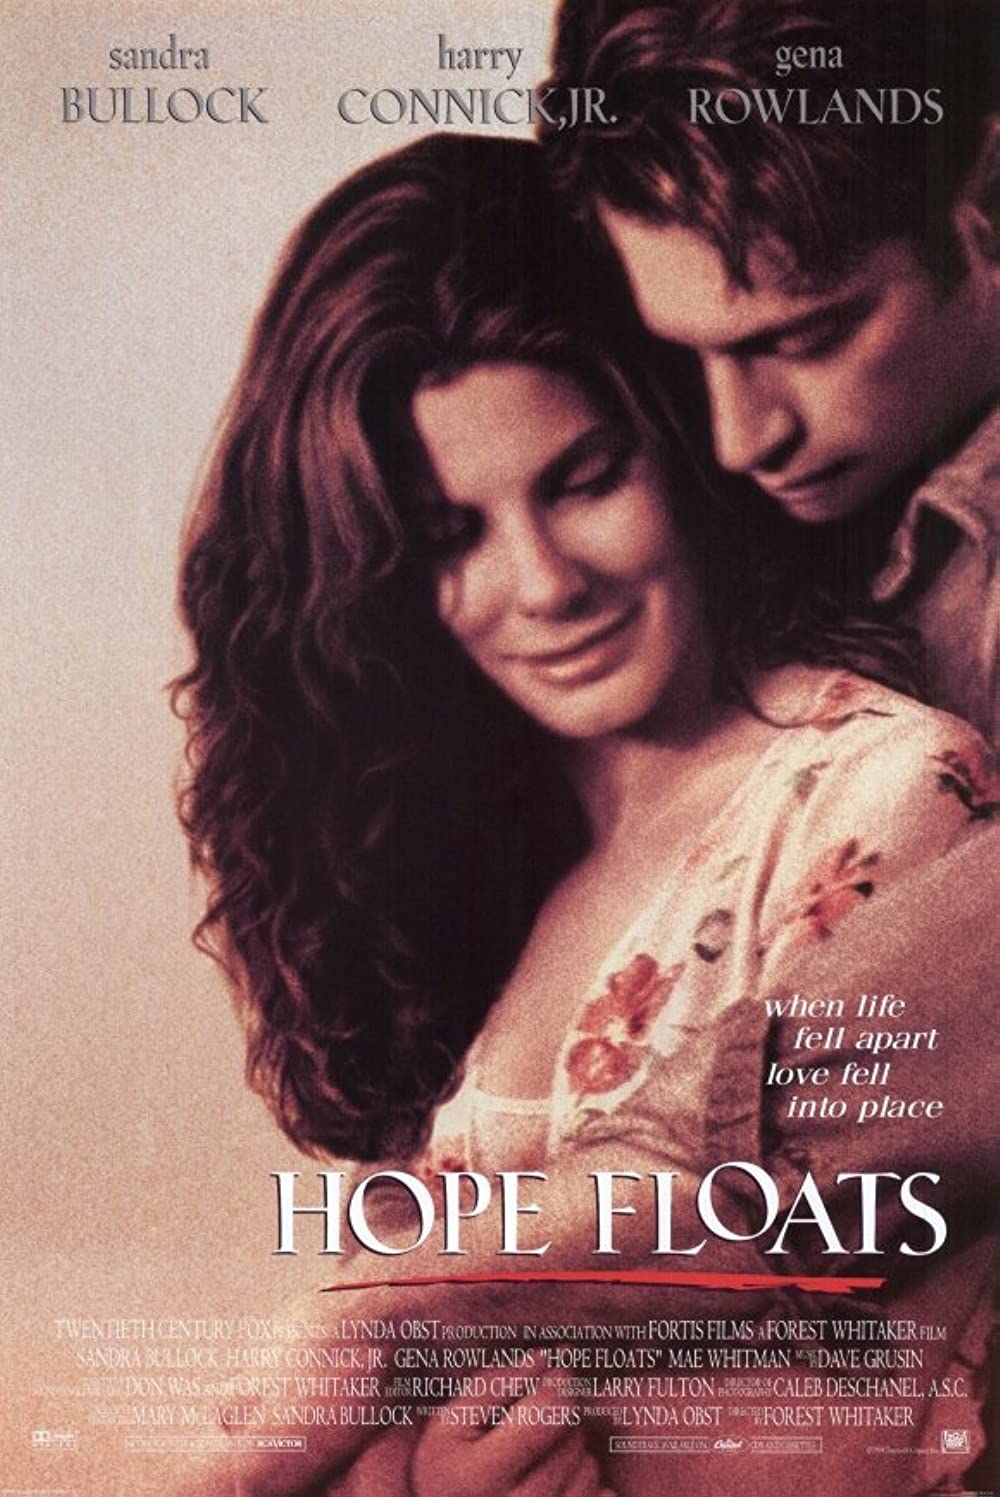 Filmbeschreibung zu Hope Floats